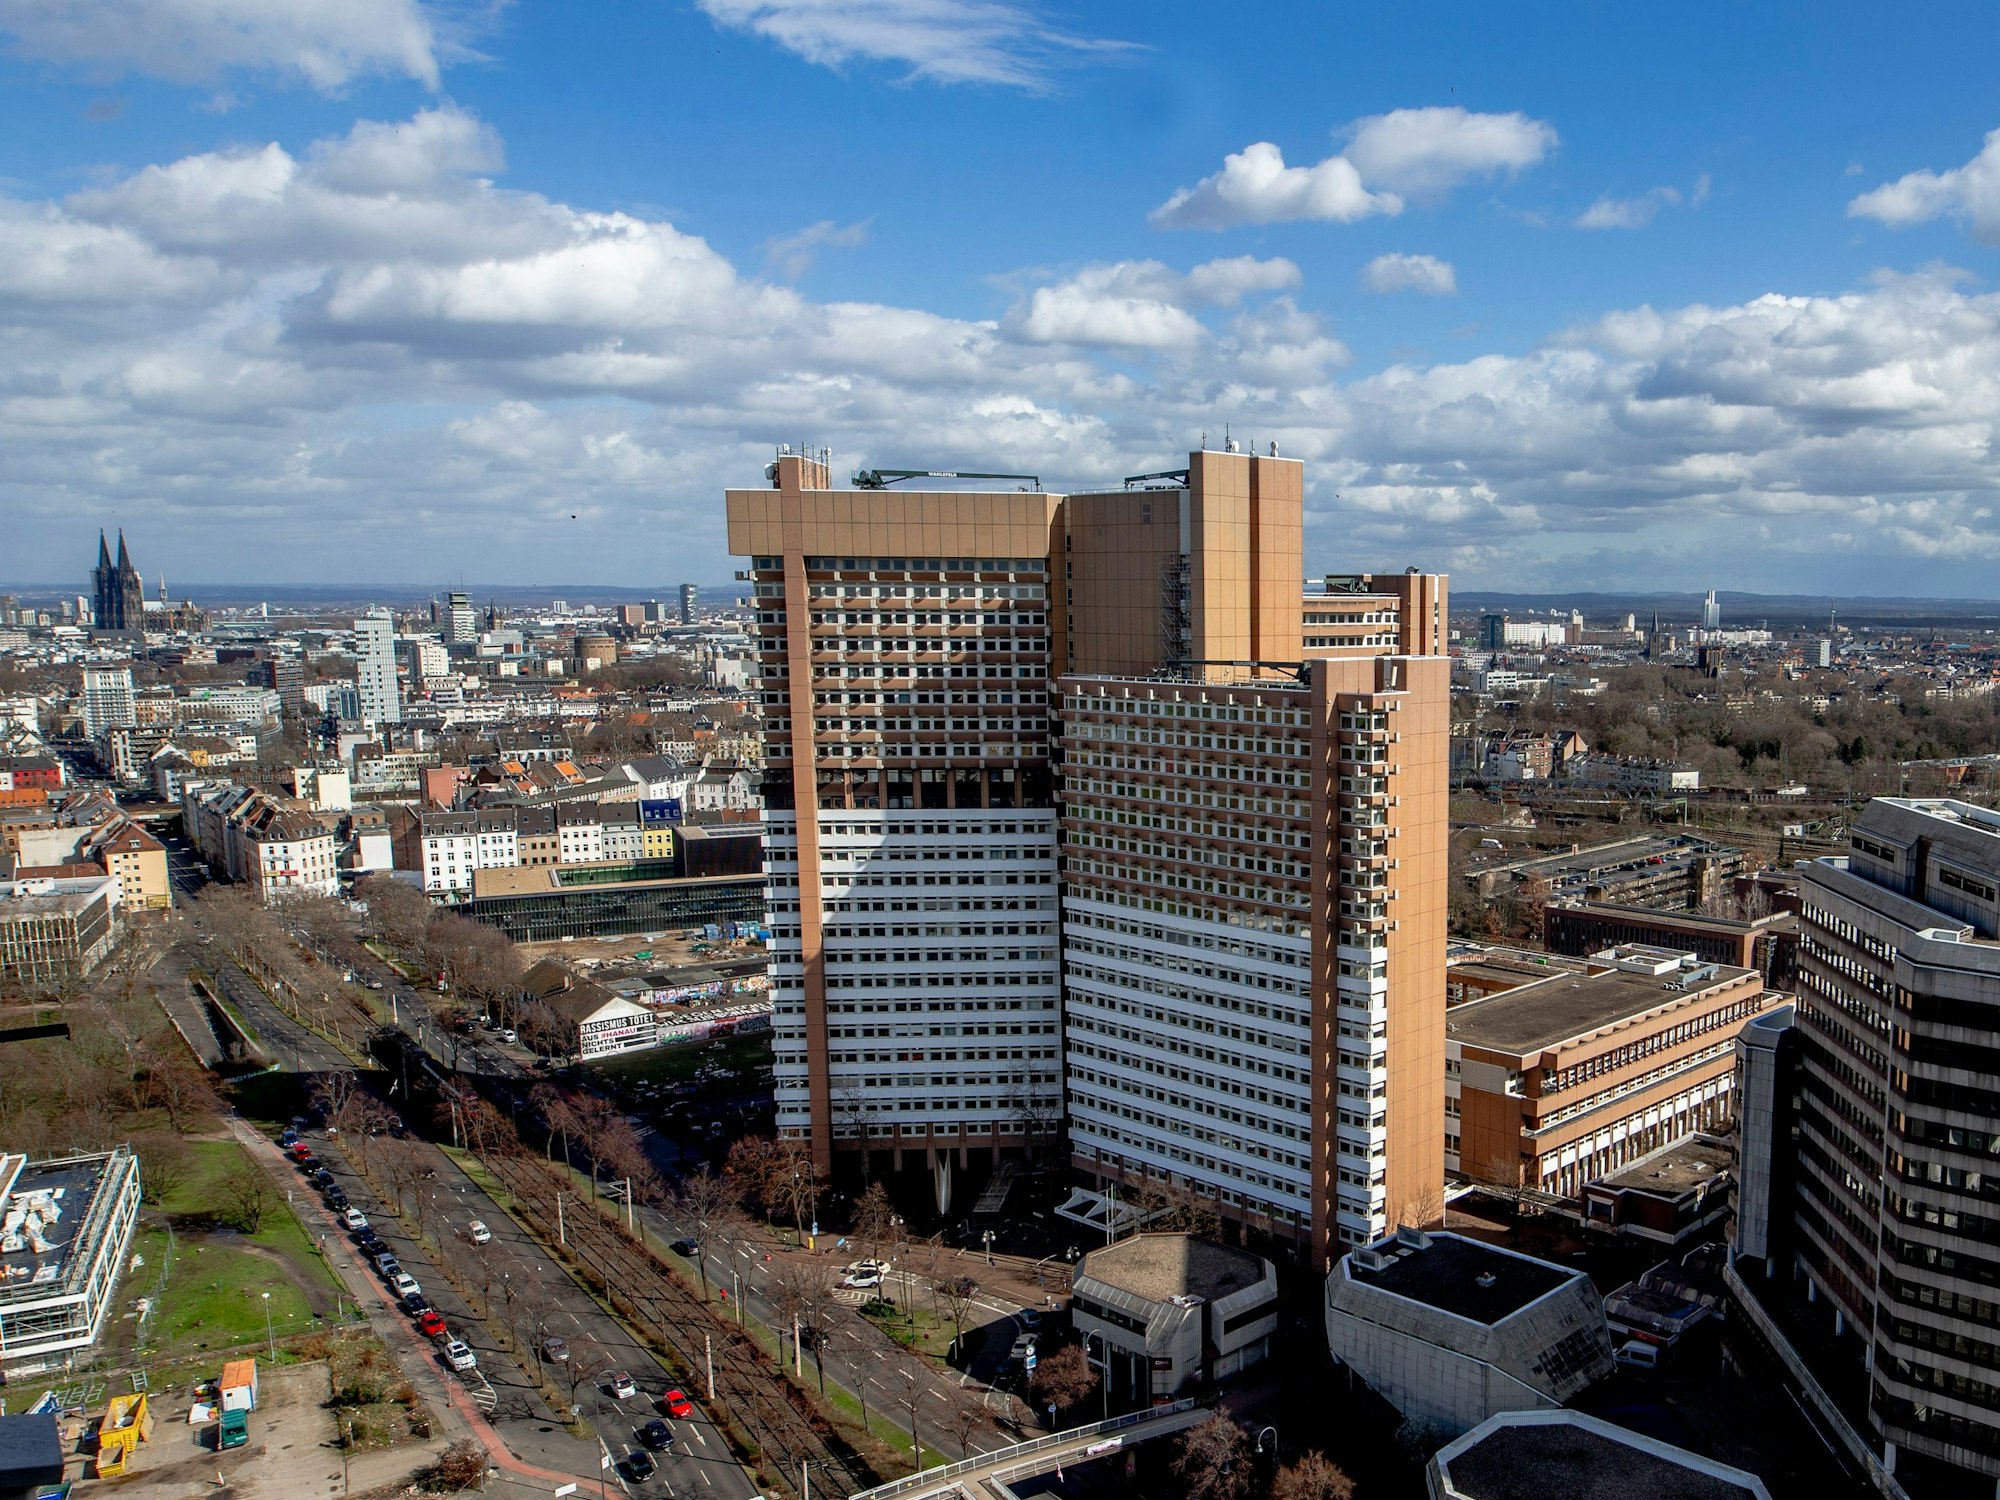 Blick aus der Luft auf das Justizzentrum Köln mit dem Amtsgericht und dem Landgericht.